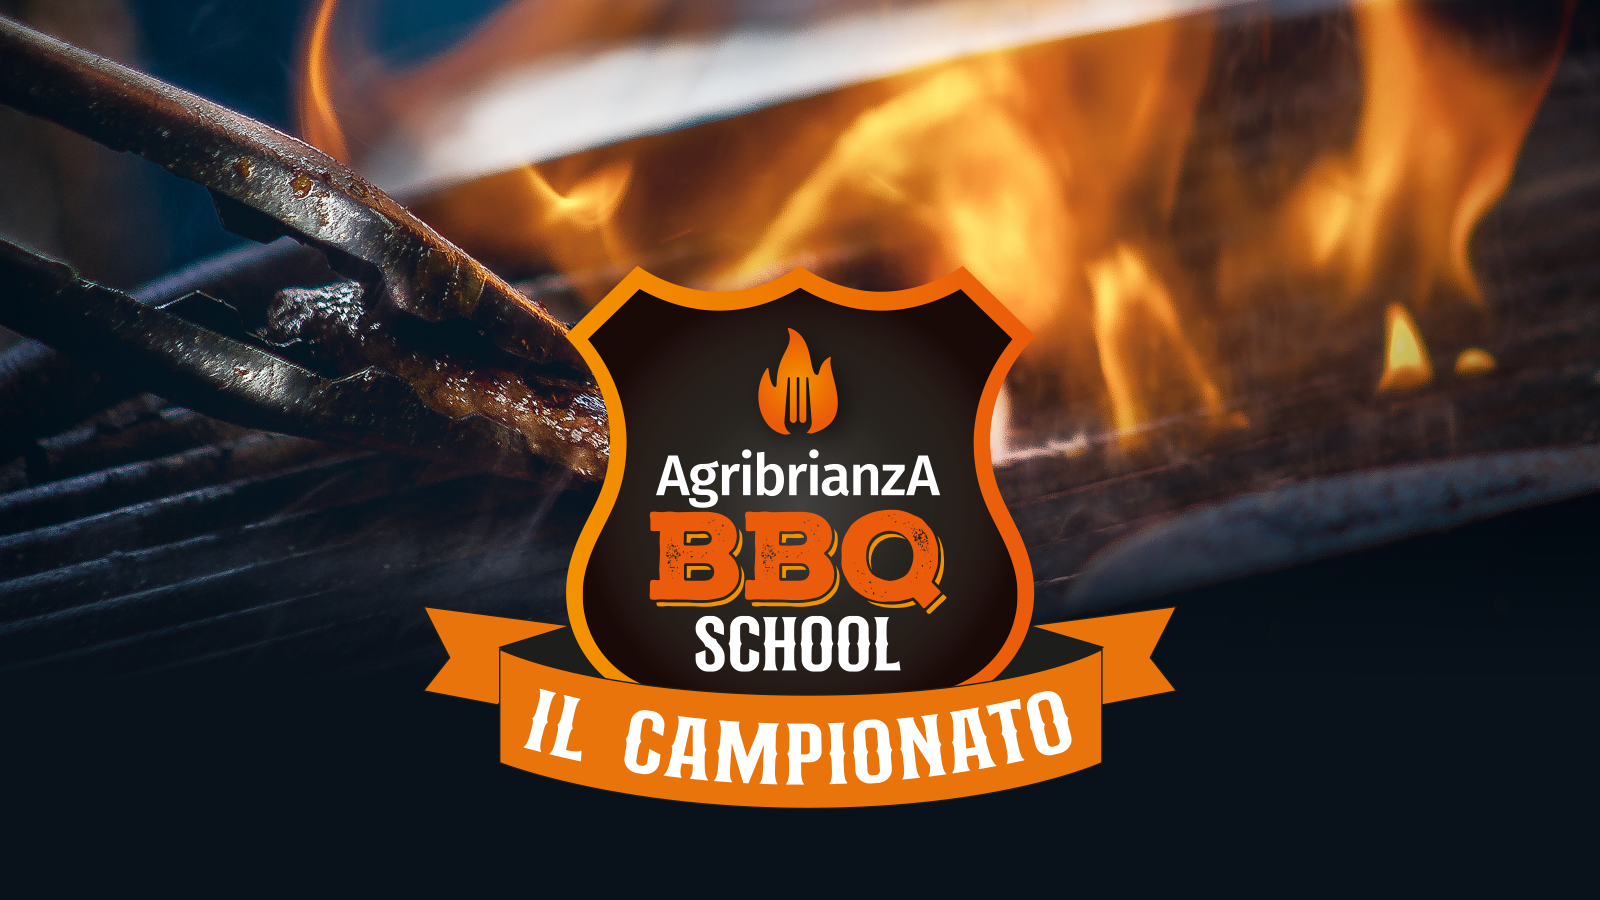 BBQ CAMPIONATO Agri Brianza